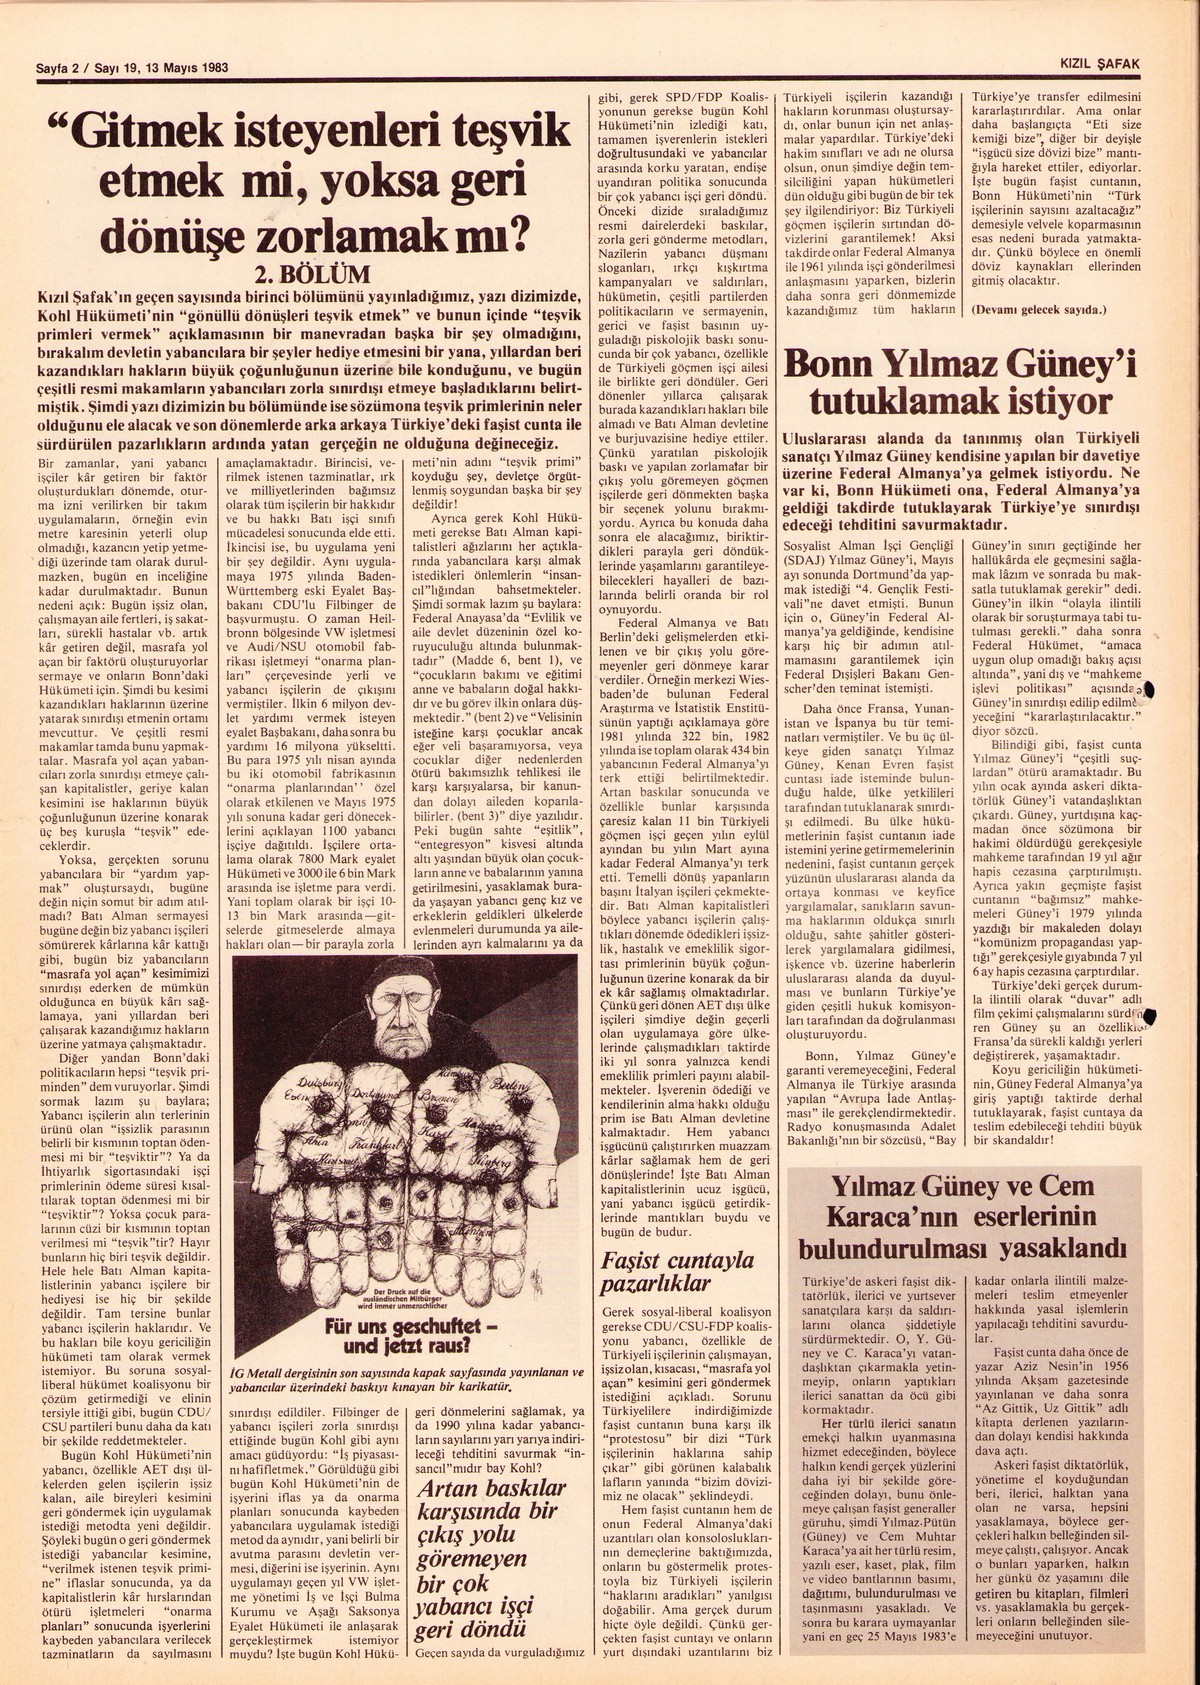 Roter Morgen, 17. Jg., 13. Mai 1983, Nr. 19, Seite 15